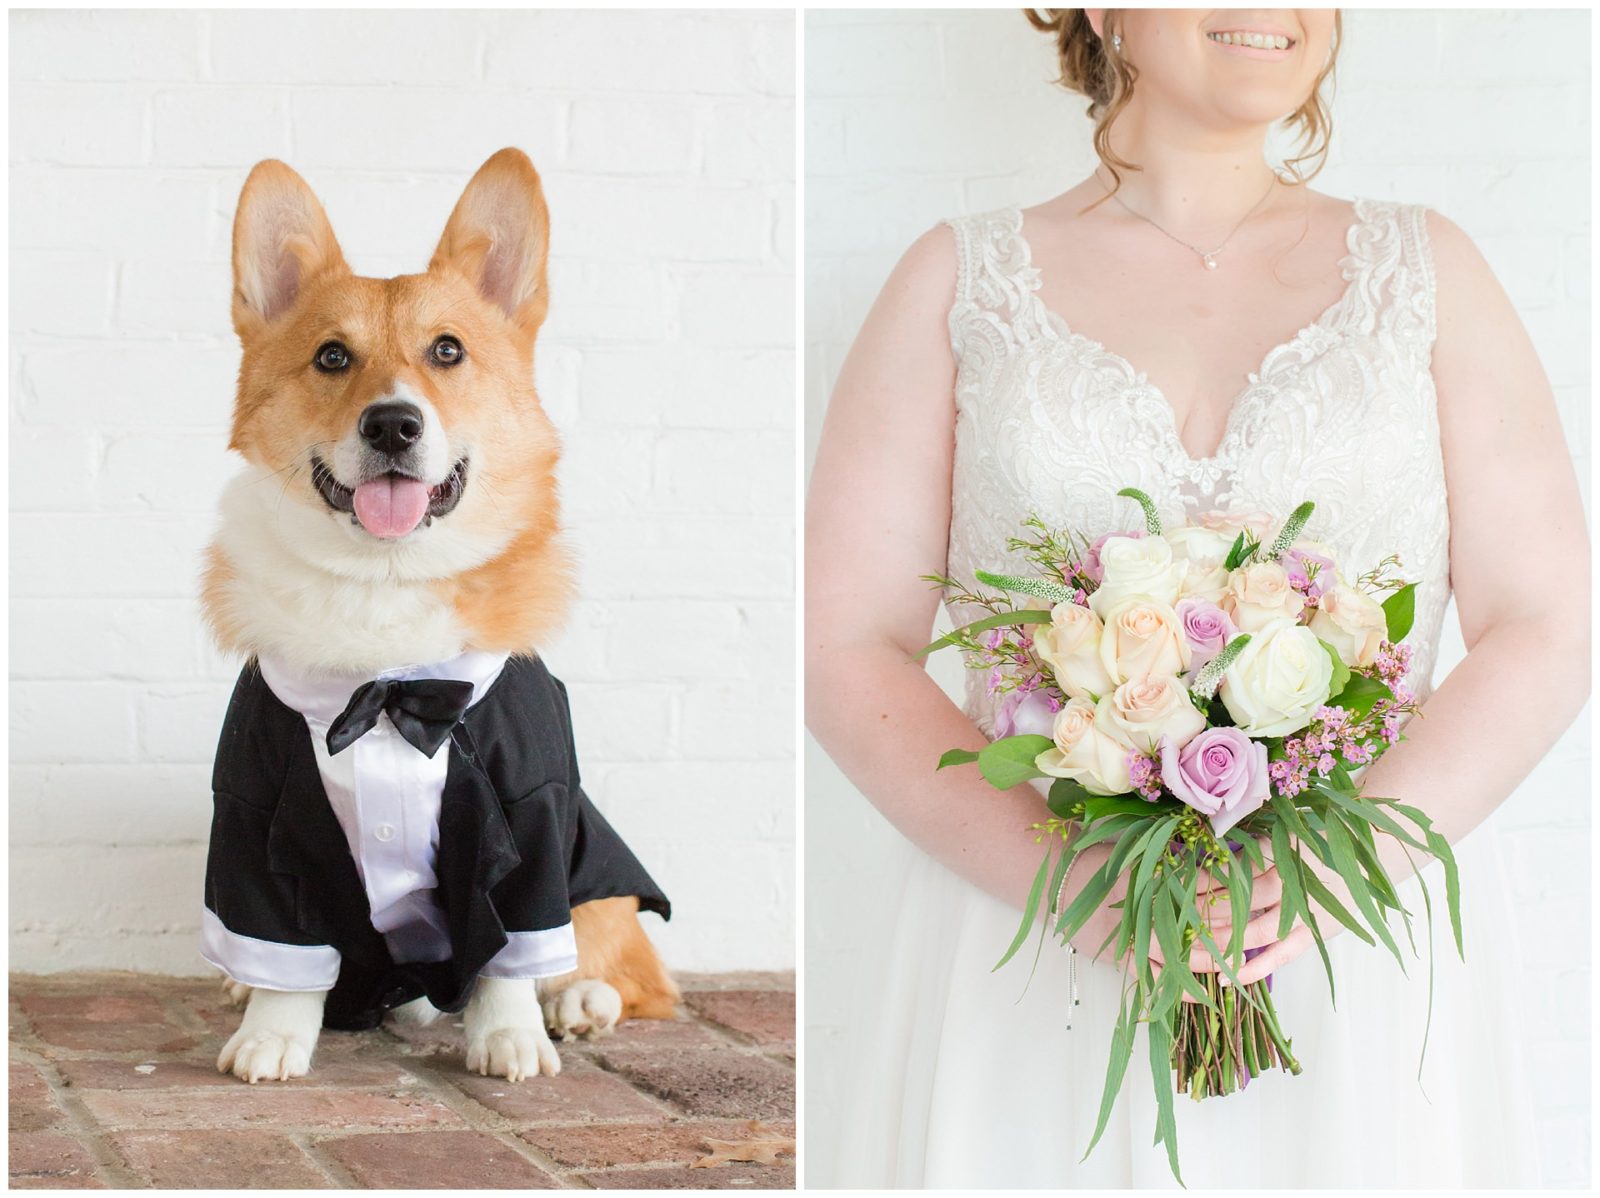 Corgi Dog Wedding Photos at Ashford Acres Inn in Cynthiana, Kentucky.